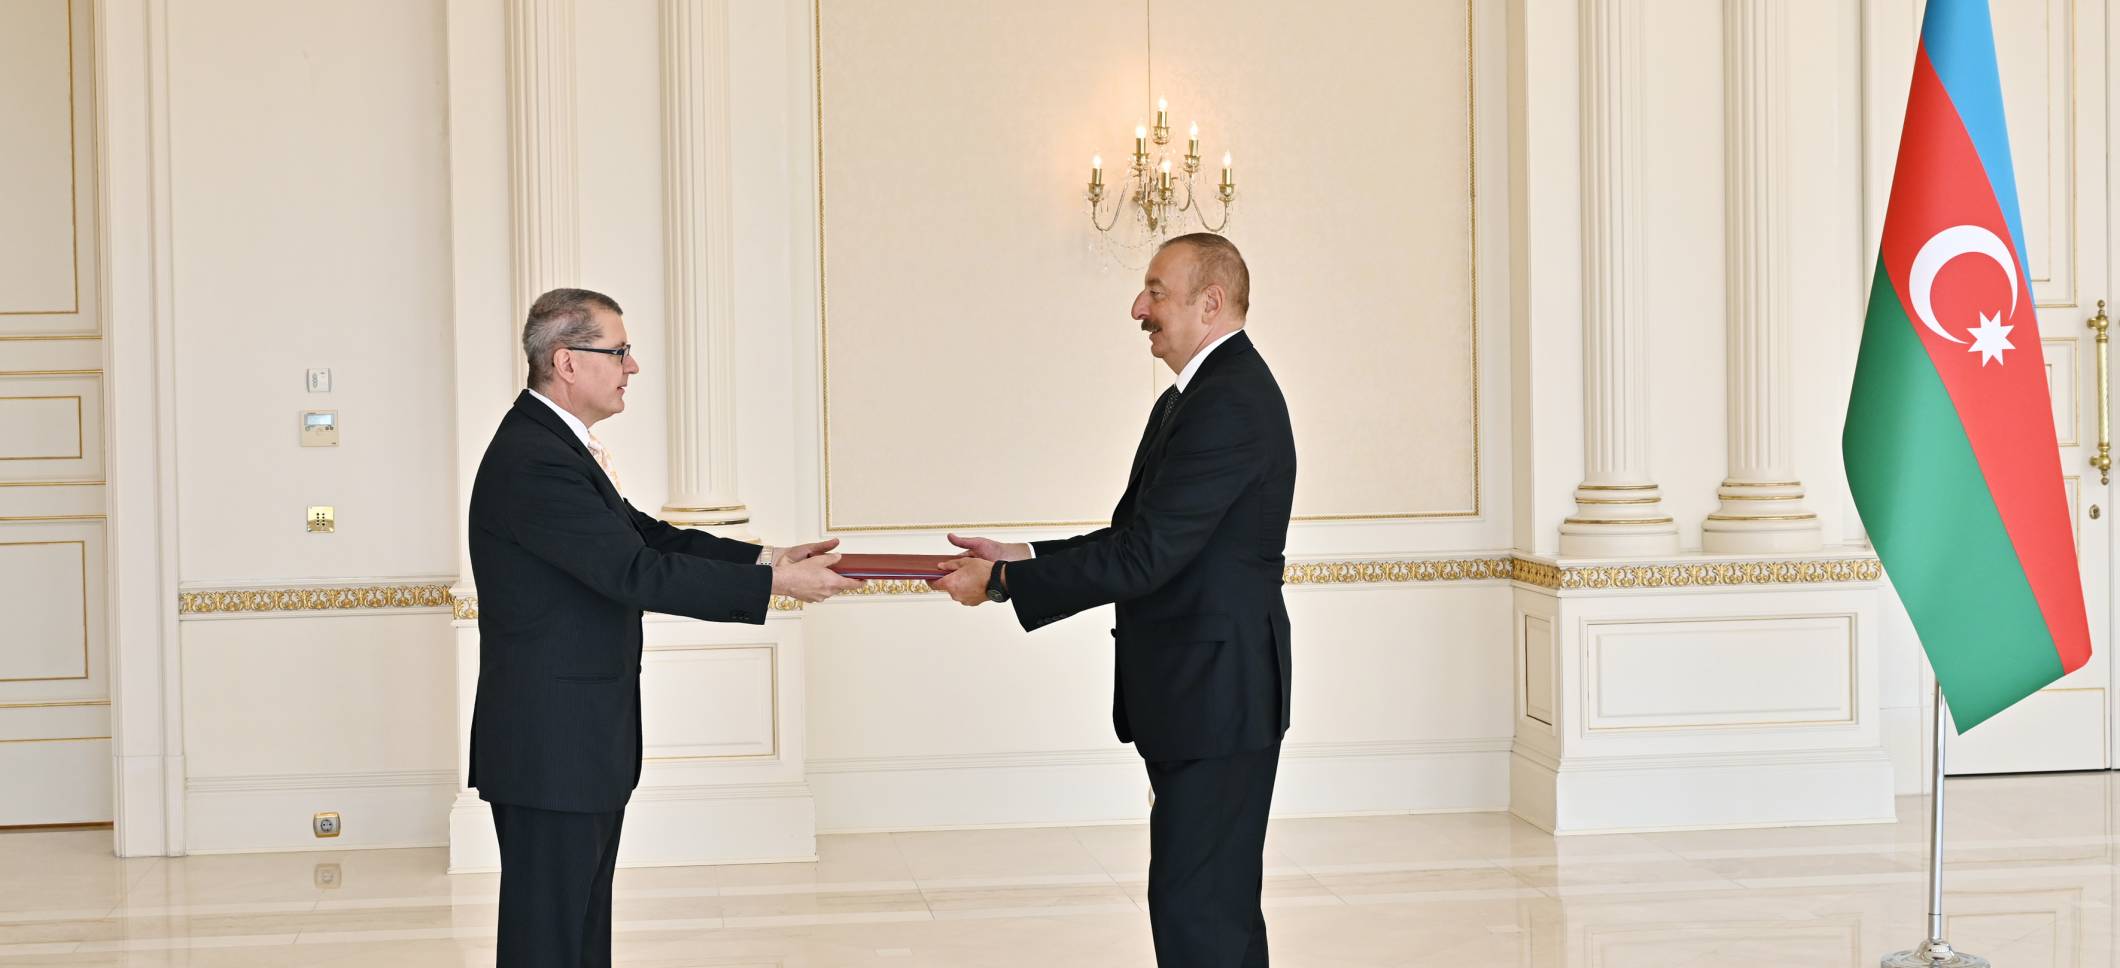 Ильхам Алиев принял верительные грамоты новоназначенного посла Австрии в нашей стране